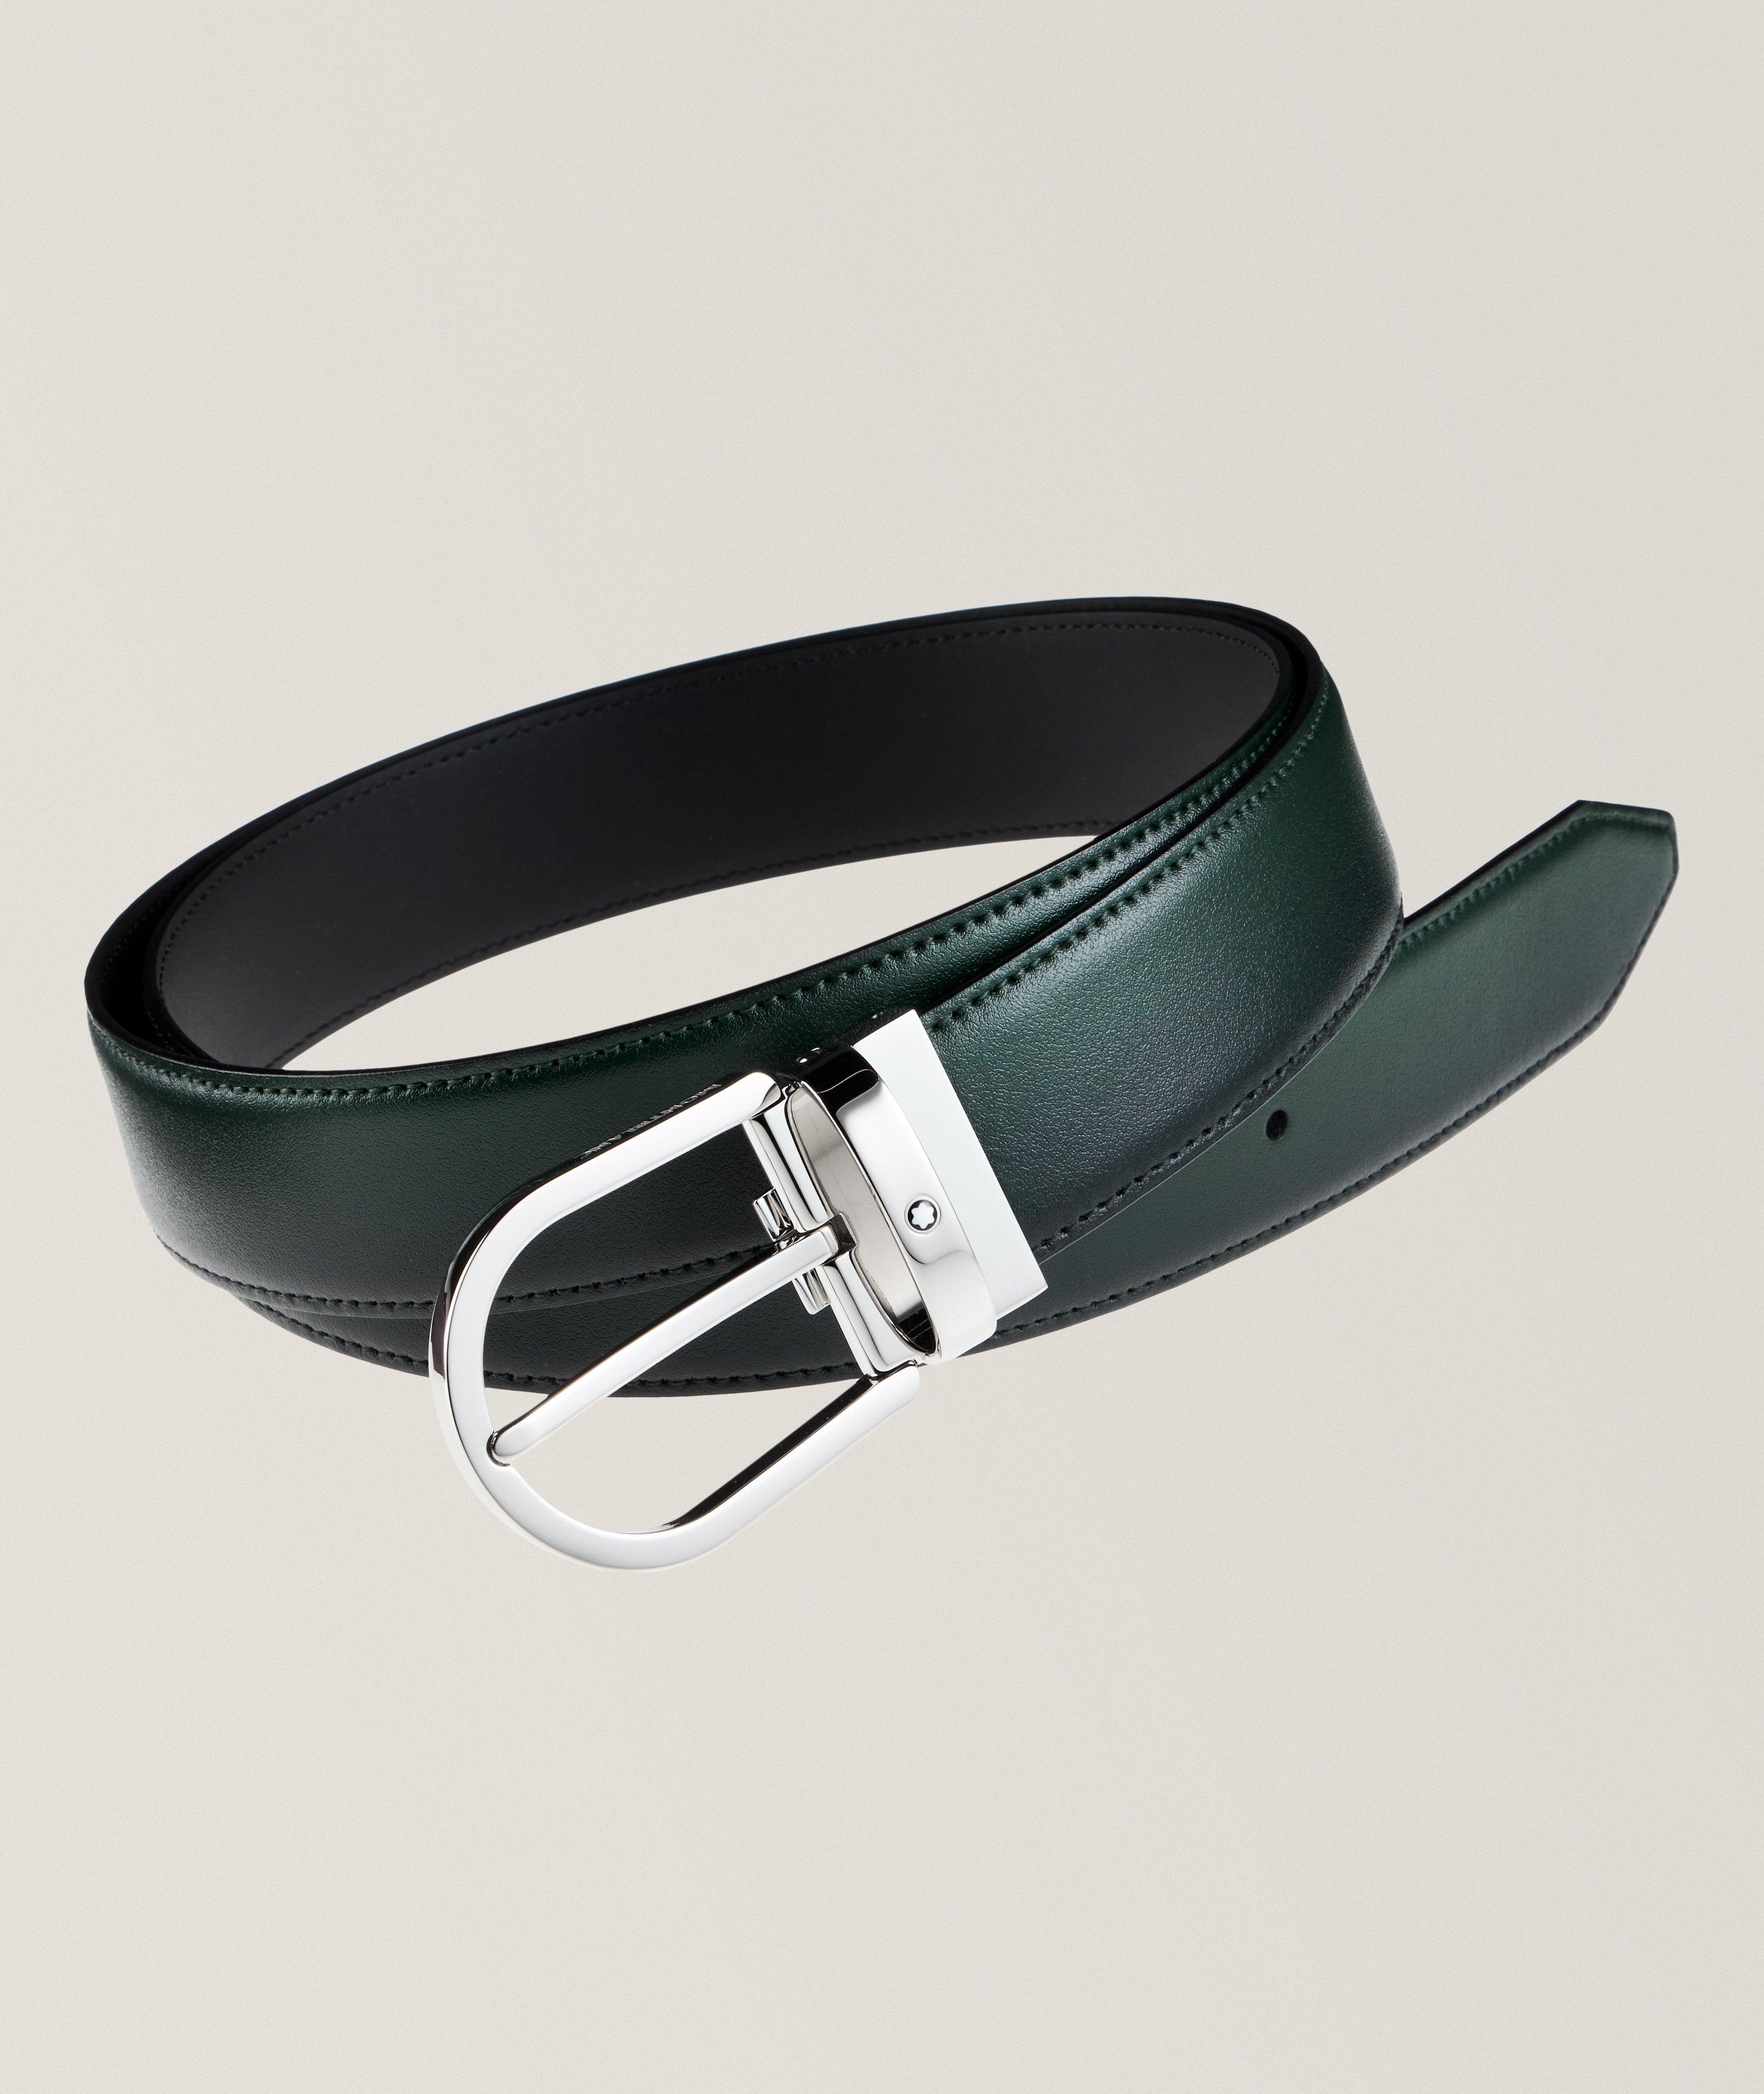 Horseshoe Buckle Leather Belt image 0